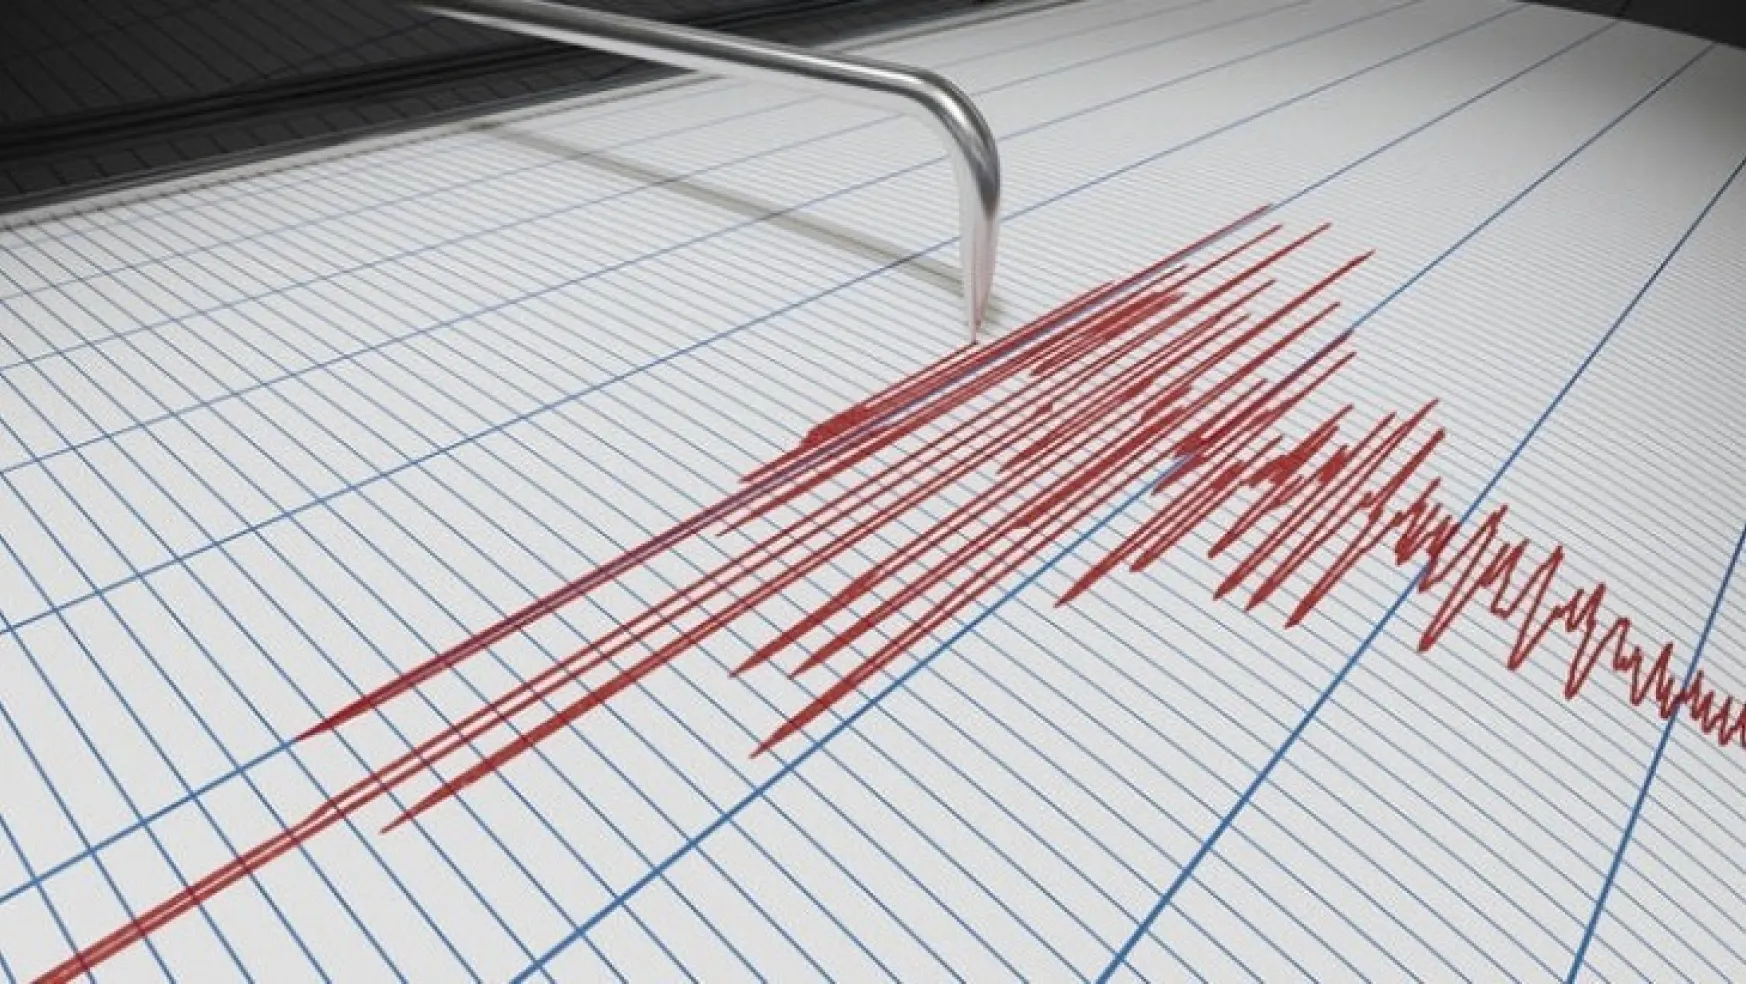 Malatya'da Korkutan 5.7 Şiddetindeki Deprem